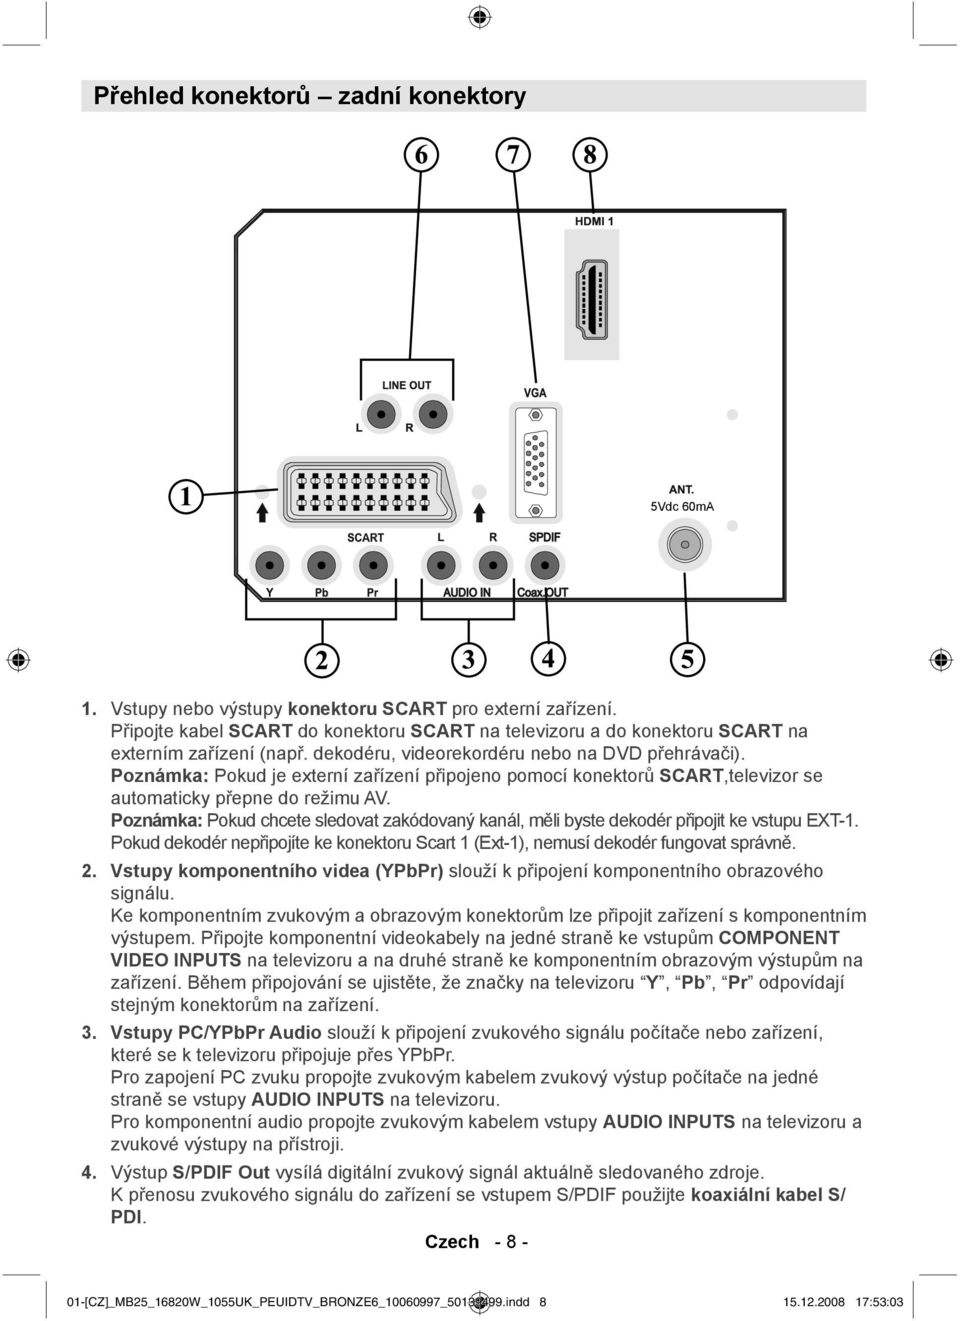 Poznámka: Pokud je externí zařízení připojeno pomocí konektorů SCART,televizor se automaticky přepne do režimu AV.